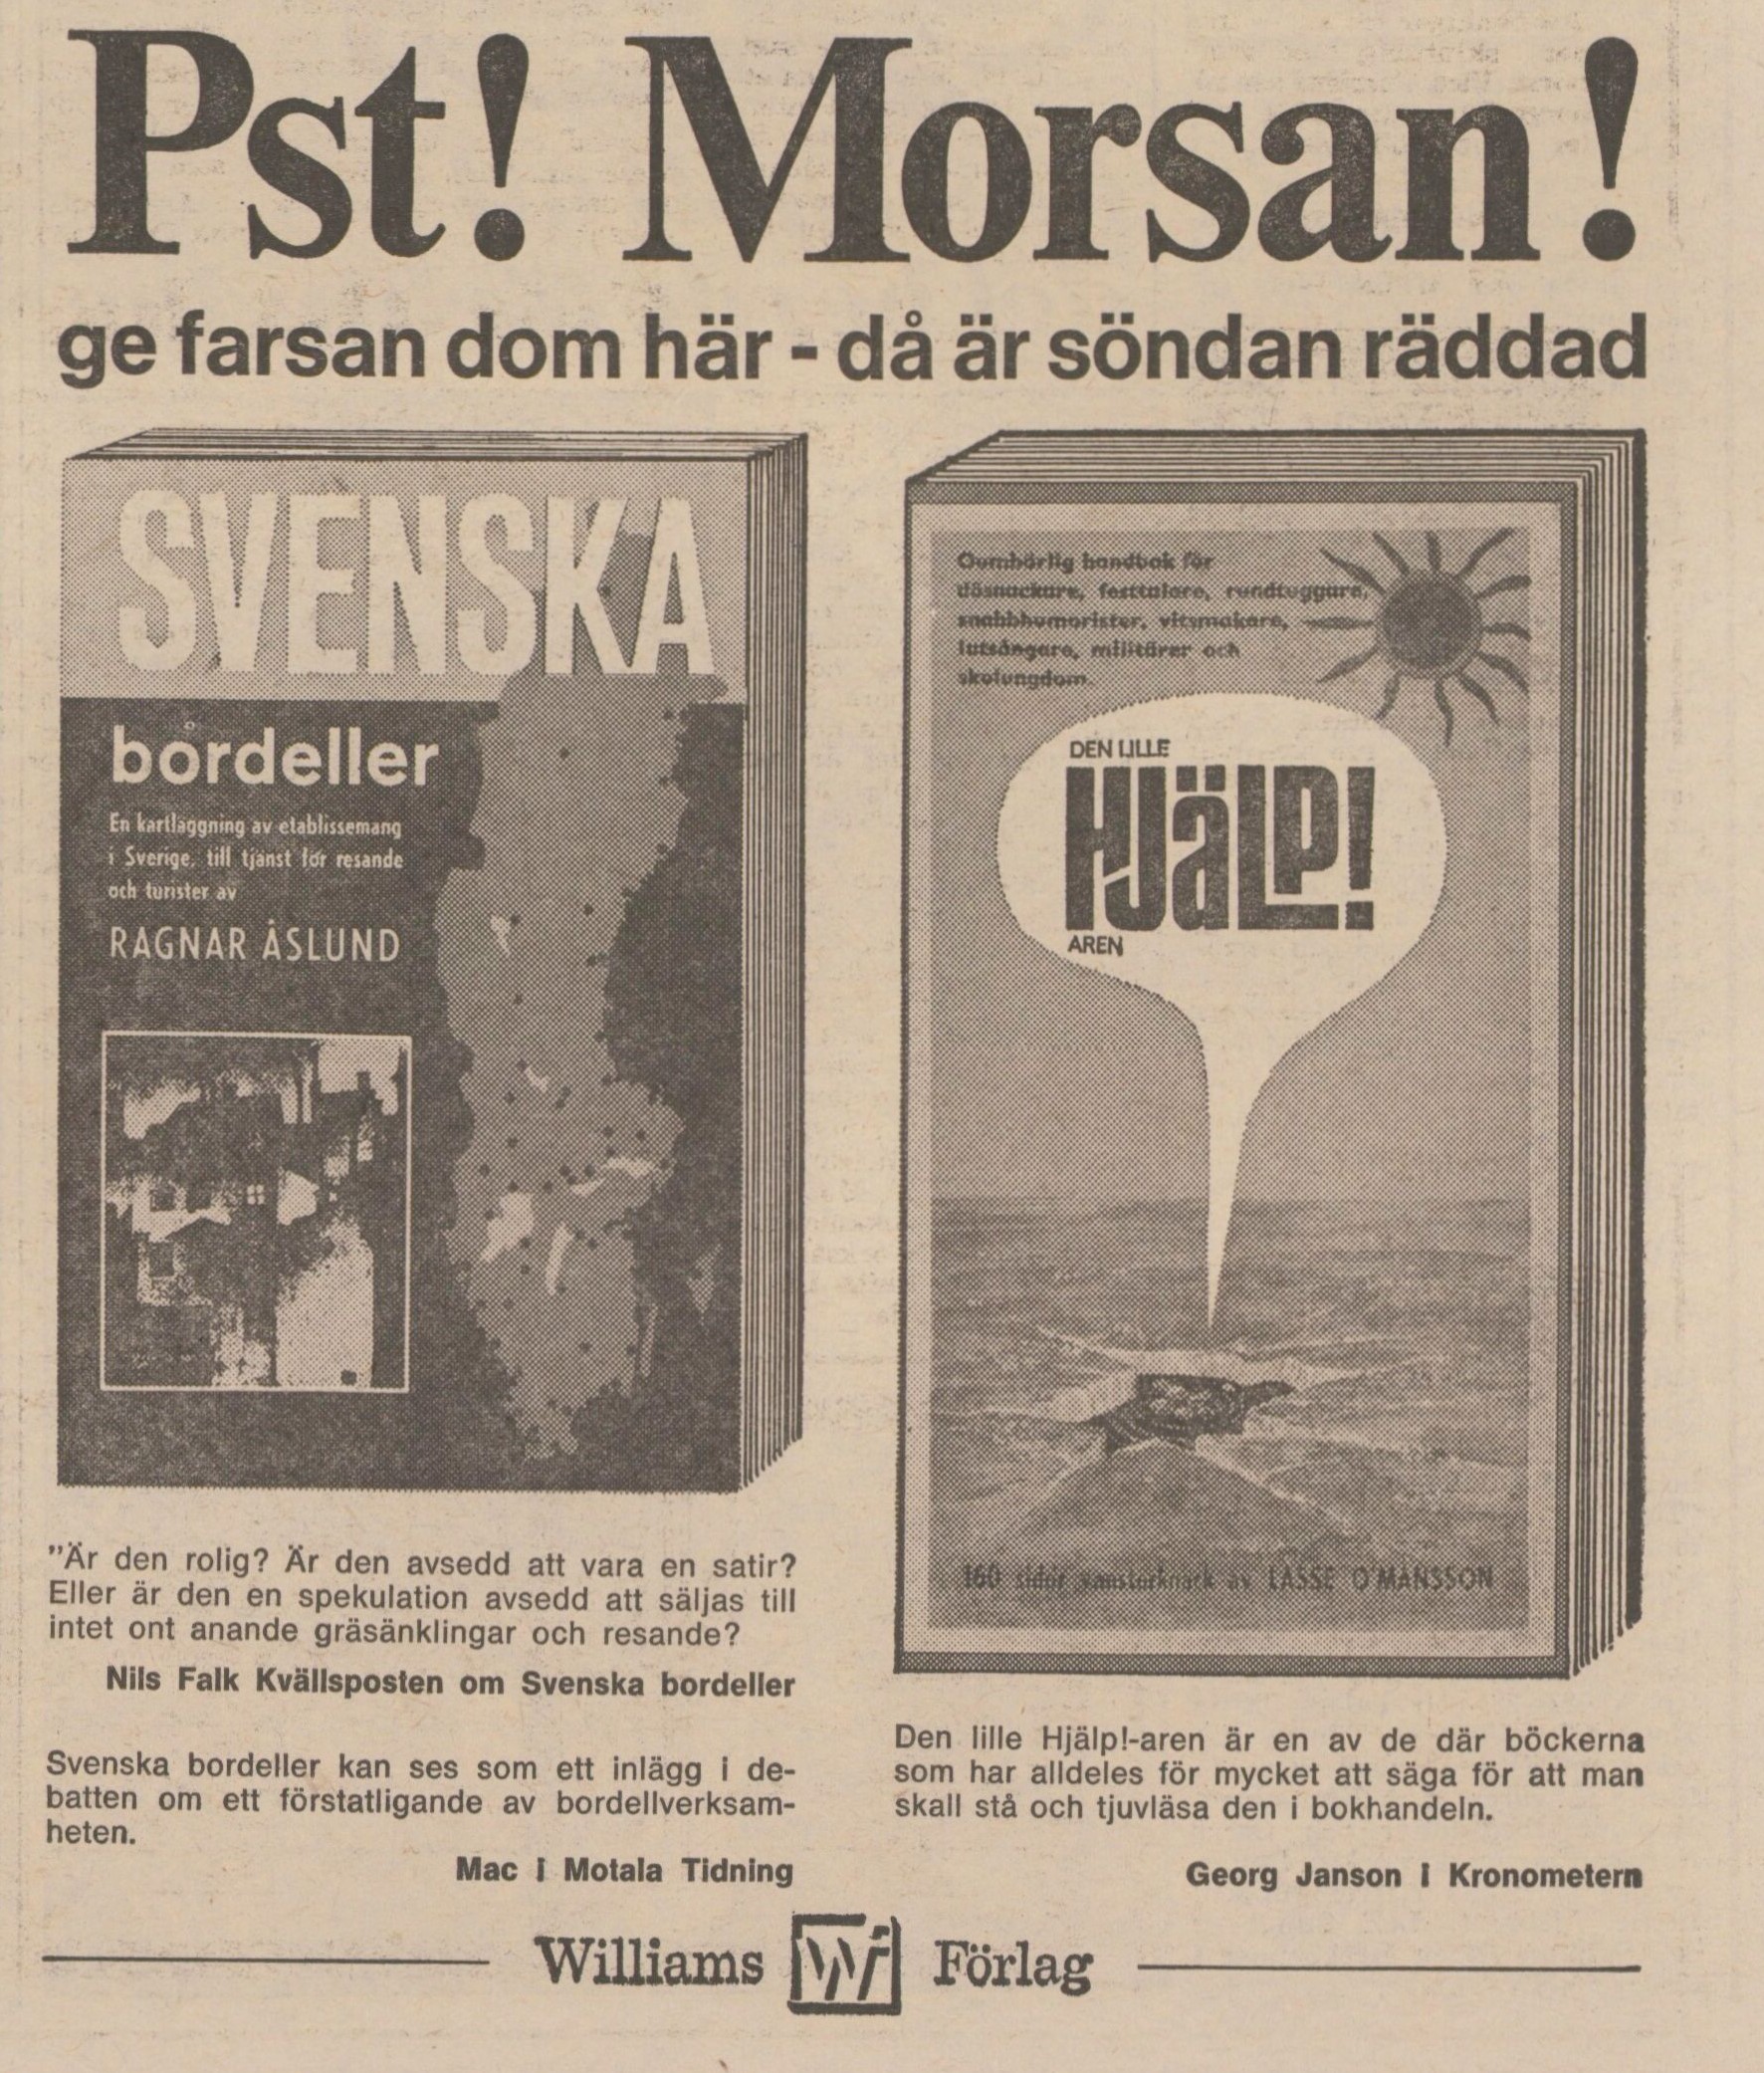 Tidningsreklam för Svenska bordeller med sloganen "Pst! Morsan! Ge farsan dom här - då är söndan räddad"